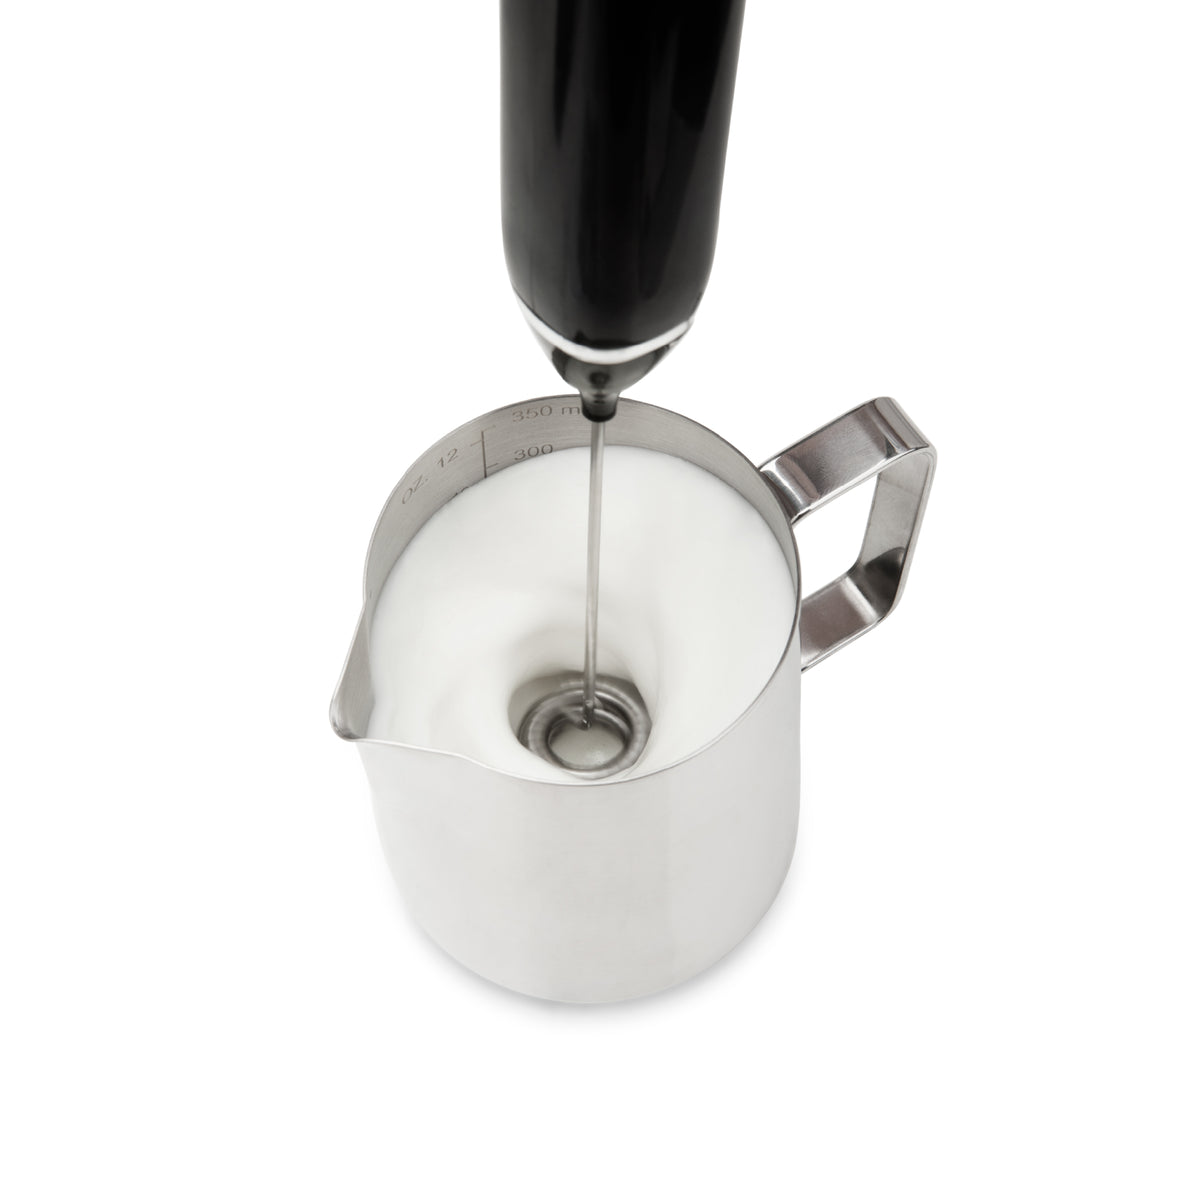 EspressoWorks Stainless Steel Milk Frothing Jug - Stainless Steel (350ml)